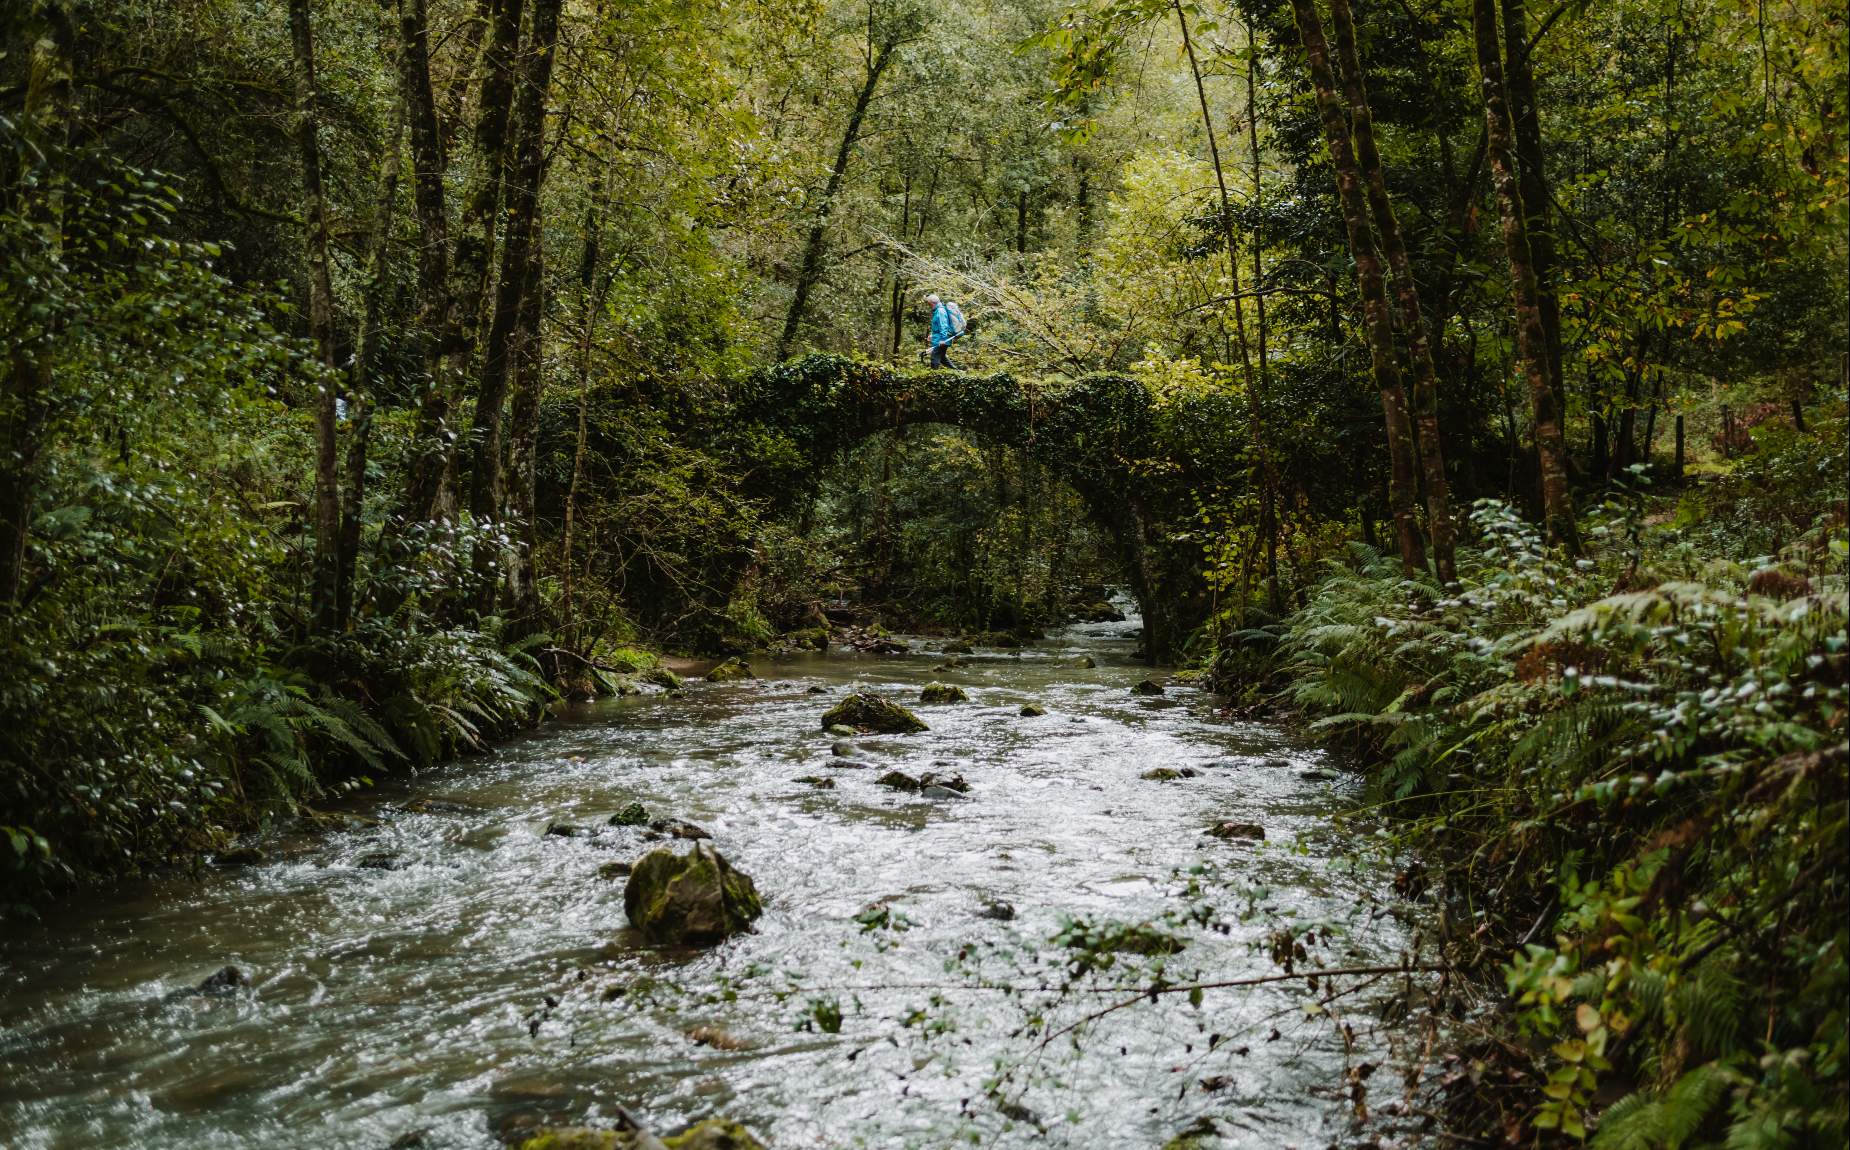 Turista caminando sobre un puente en el bosque por encima de un r&iacute;o